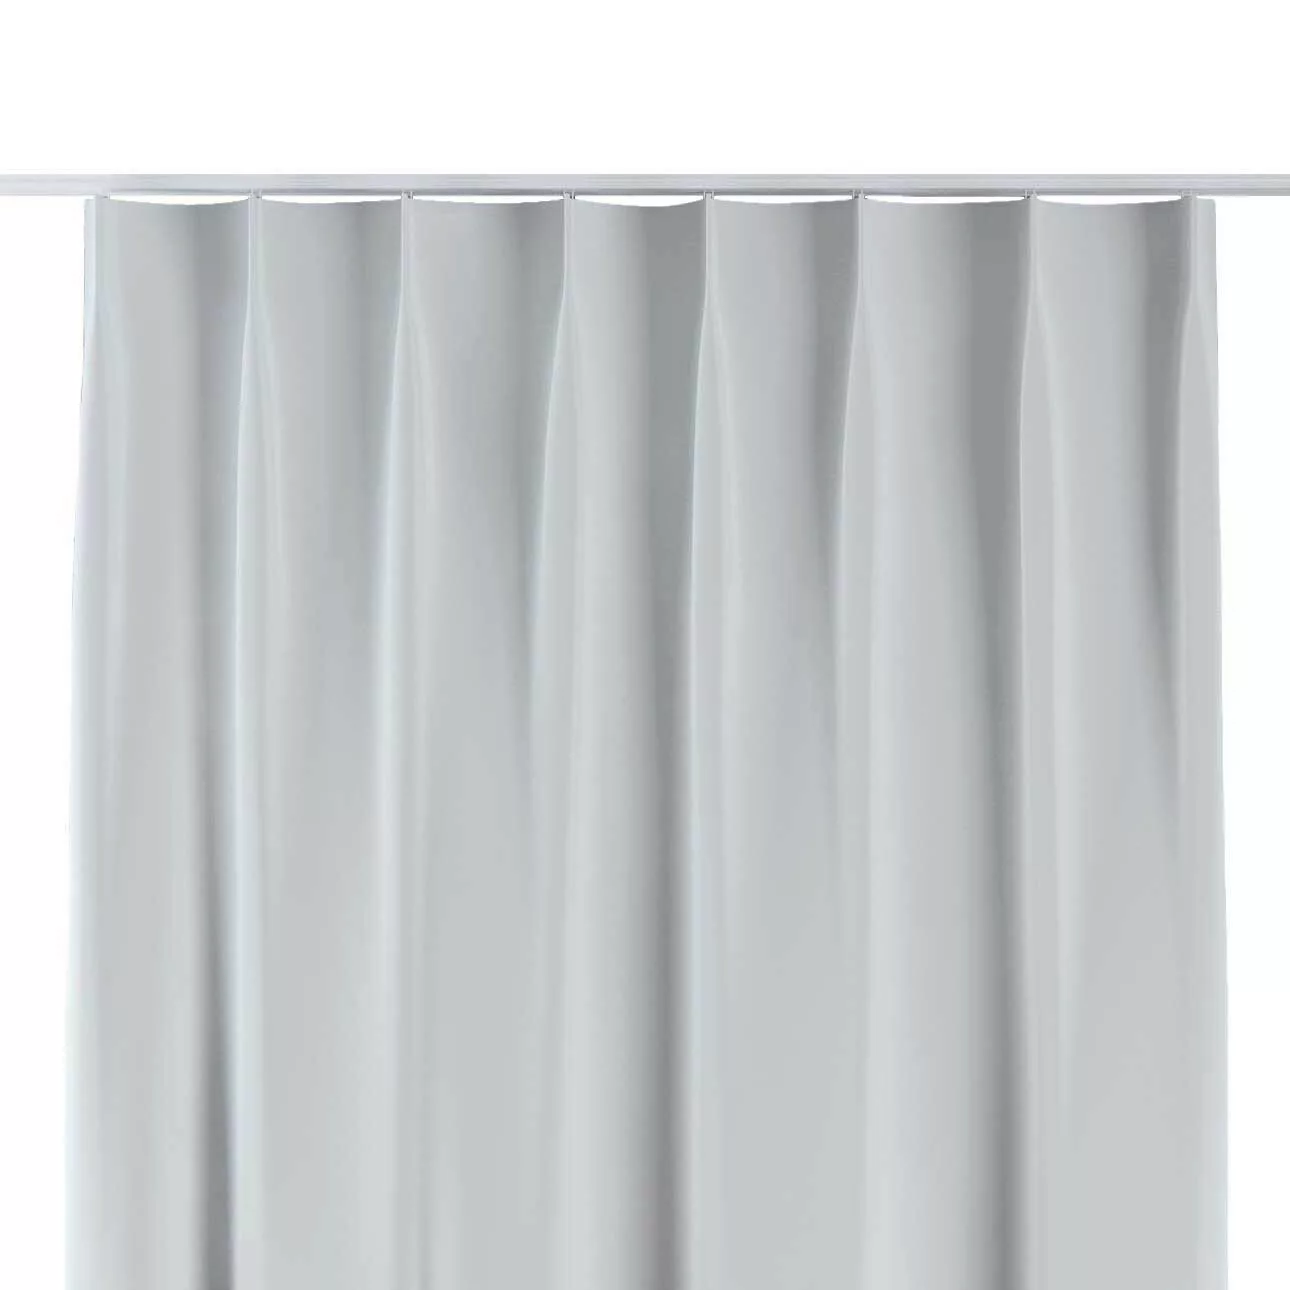 Vorhang mit flämischen 1-er Falten, weiß-grau, Blackout 300 cm (269-05) günstig online kaufen